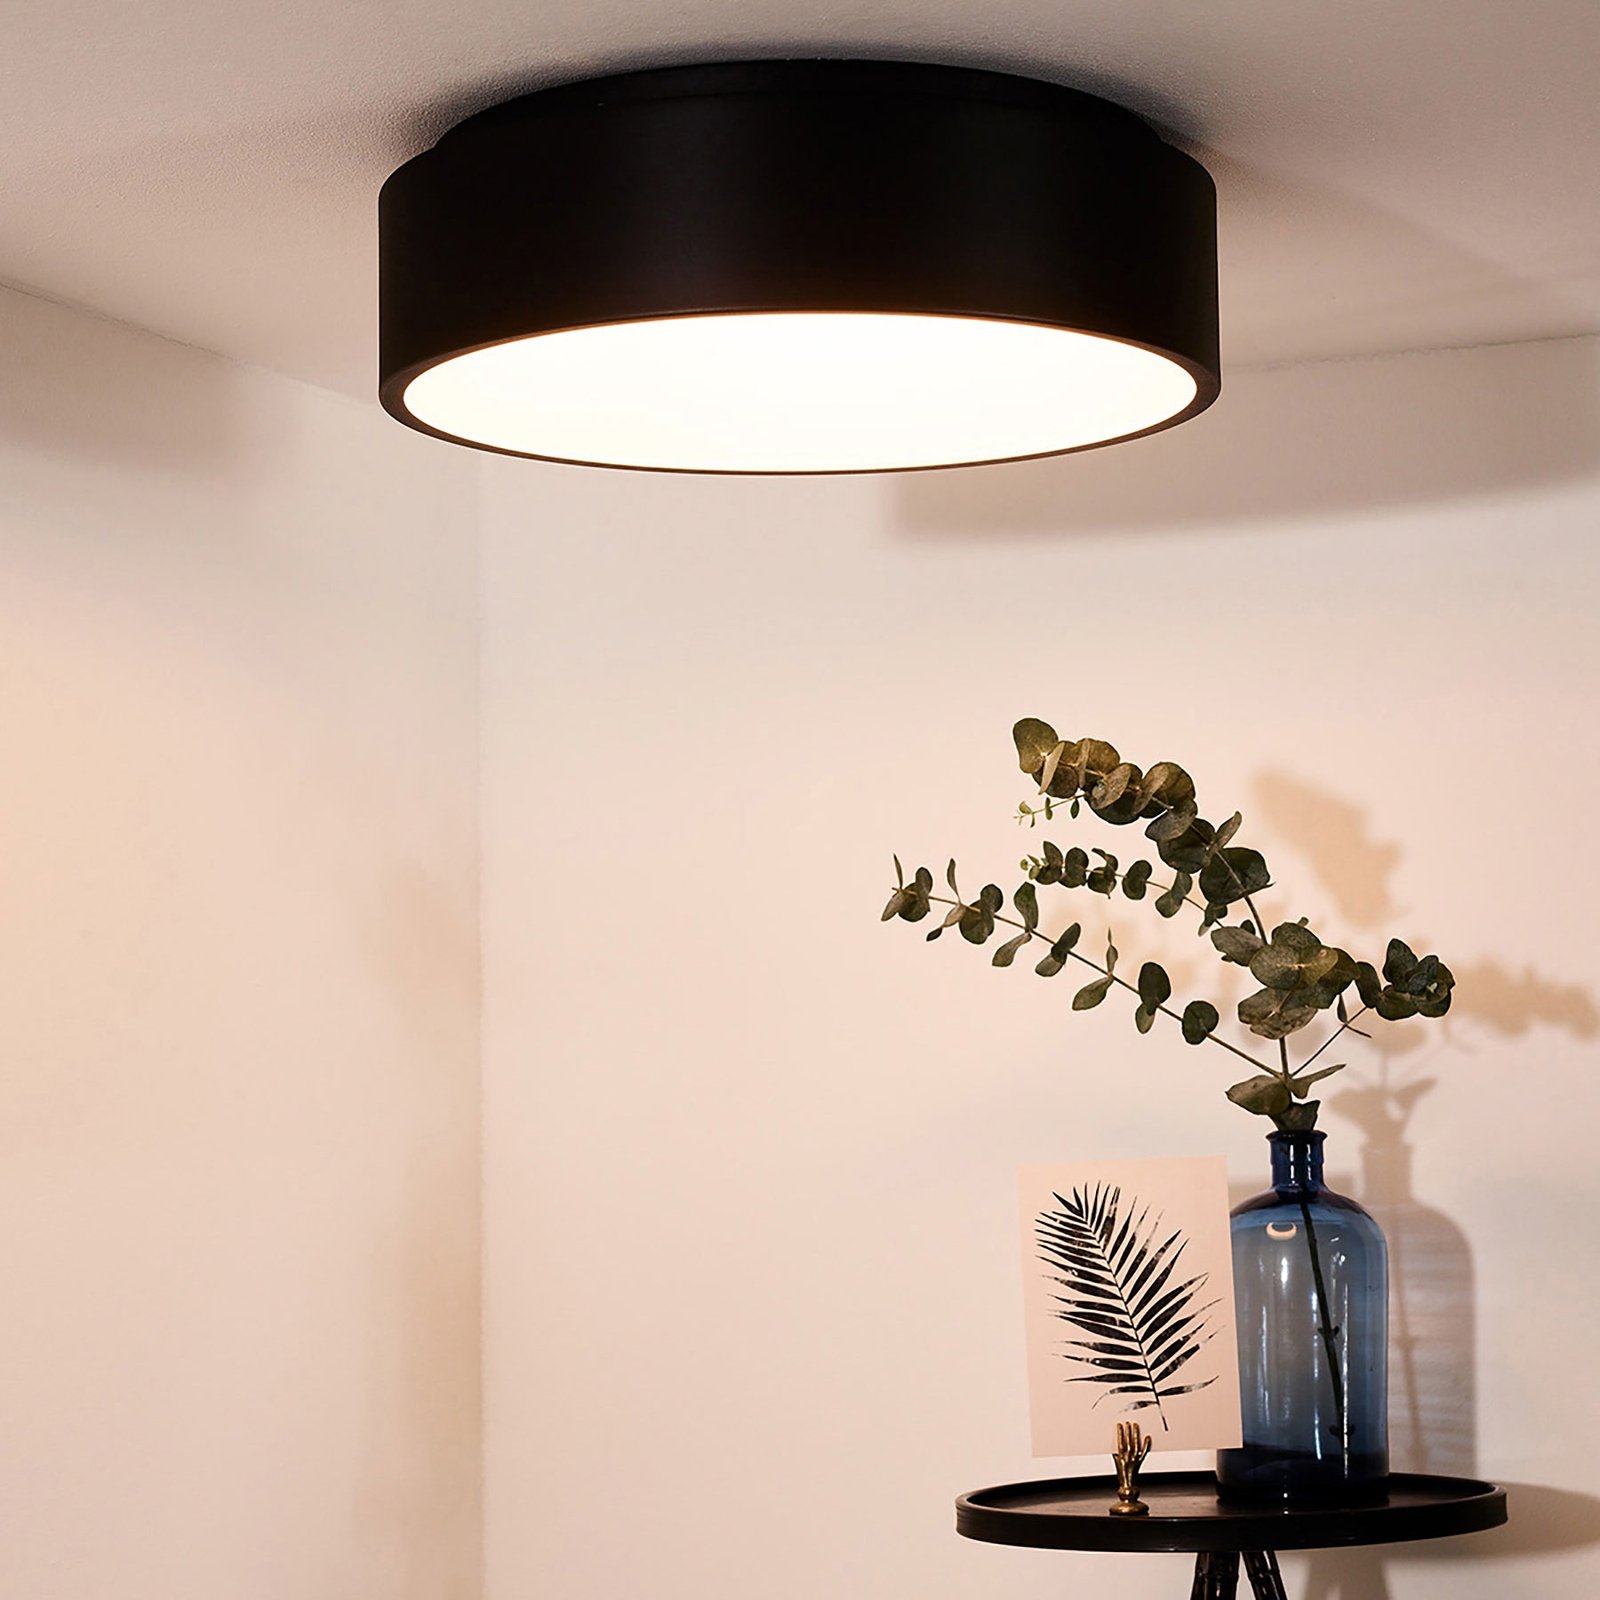 LED ceiling light Talowe black Ø 45 cm